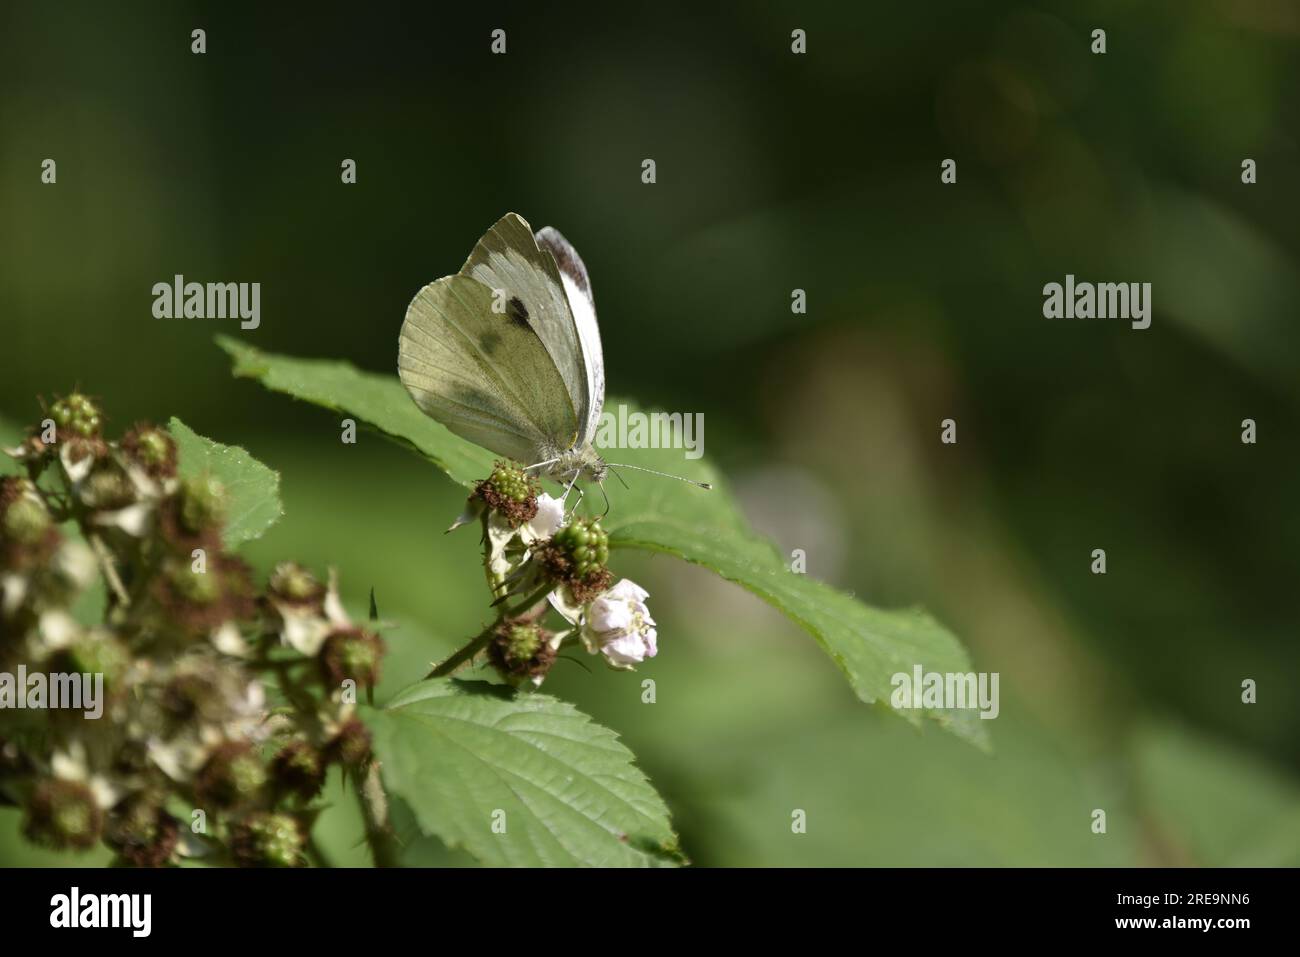 Profil à droite, face à face image d'un grand papillon blanc (Pieris brassicae) montrant des traits faciaux pointus, perché sur une fleur de mûrier, au pays de Galles, Royaume-Uni Banque D'Images